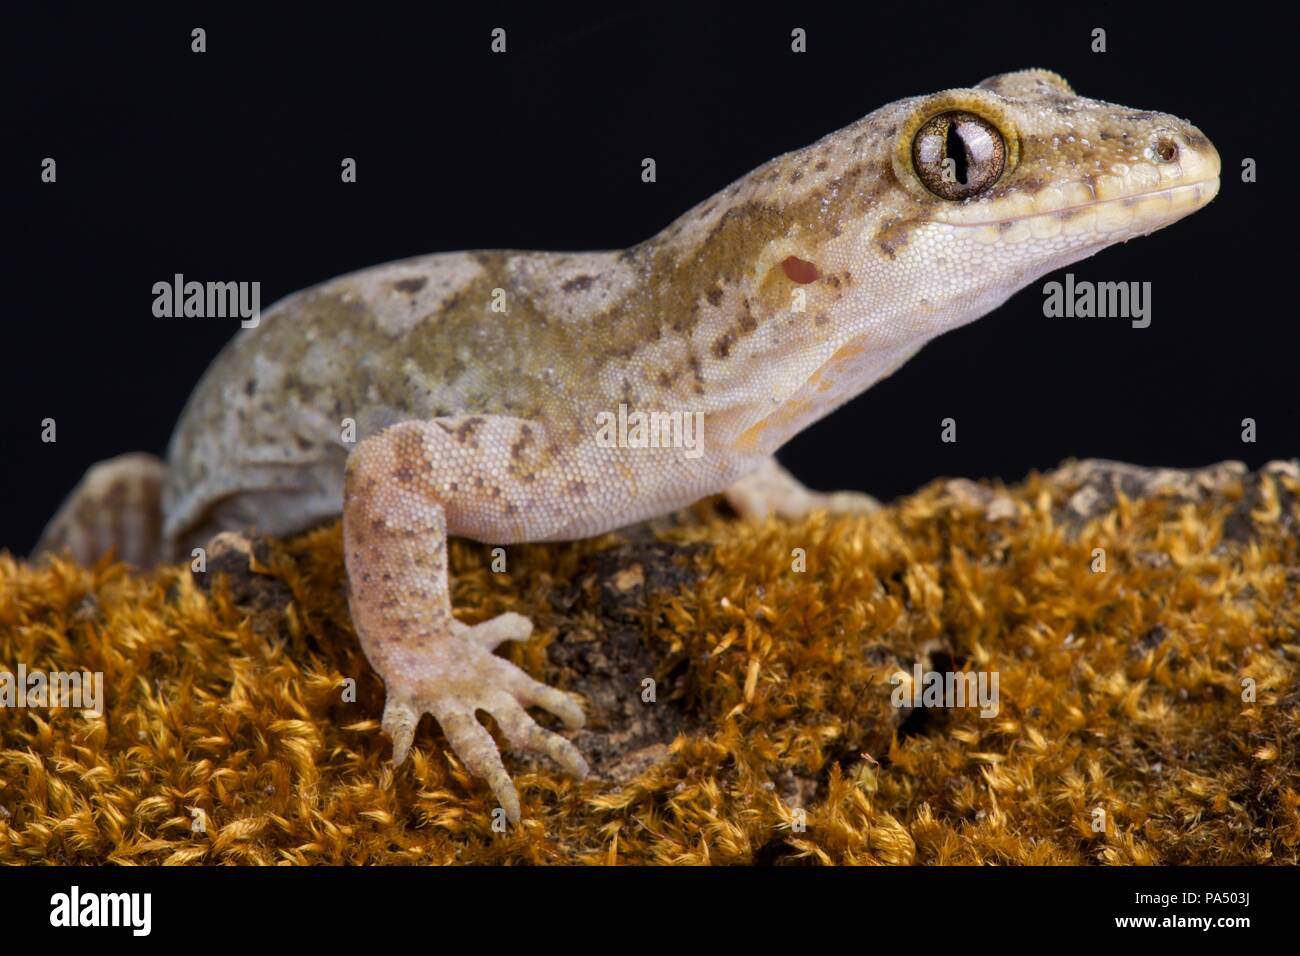 Die Pacific Gecko (Dactylocnemis pacificus) ist ein Gecko endemisch auf der Nordinsel von Neuseeland. Sie sind nachtaktiv, kletternde und terrestrische spe Stockfoto